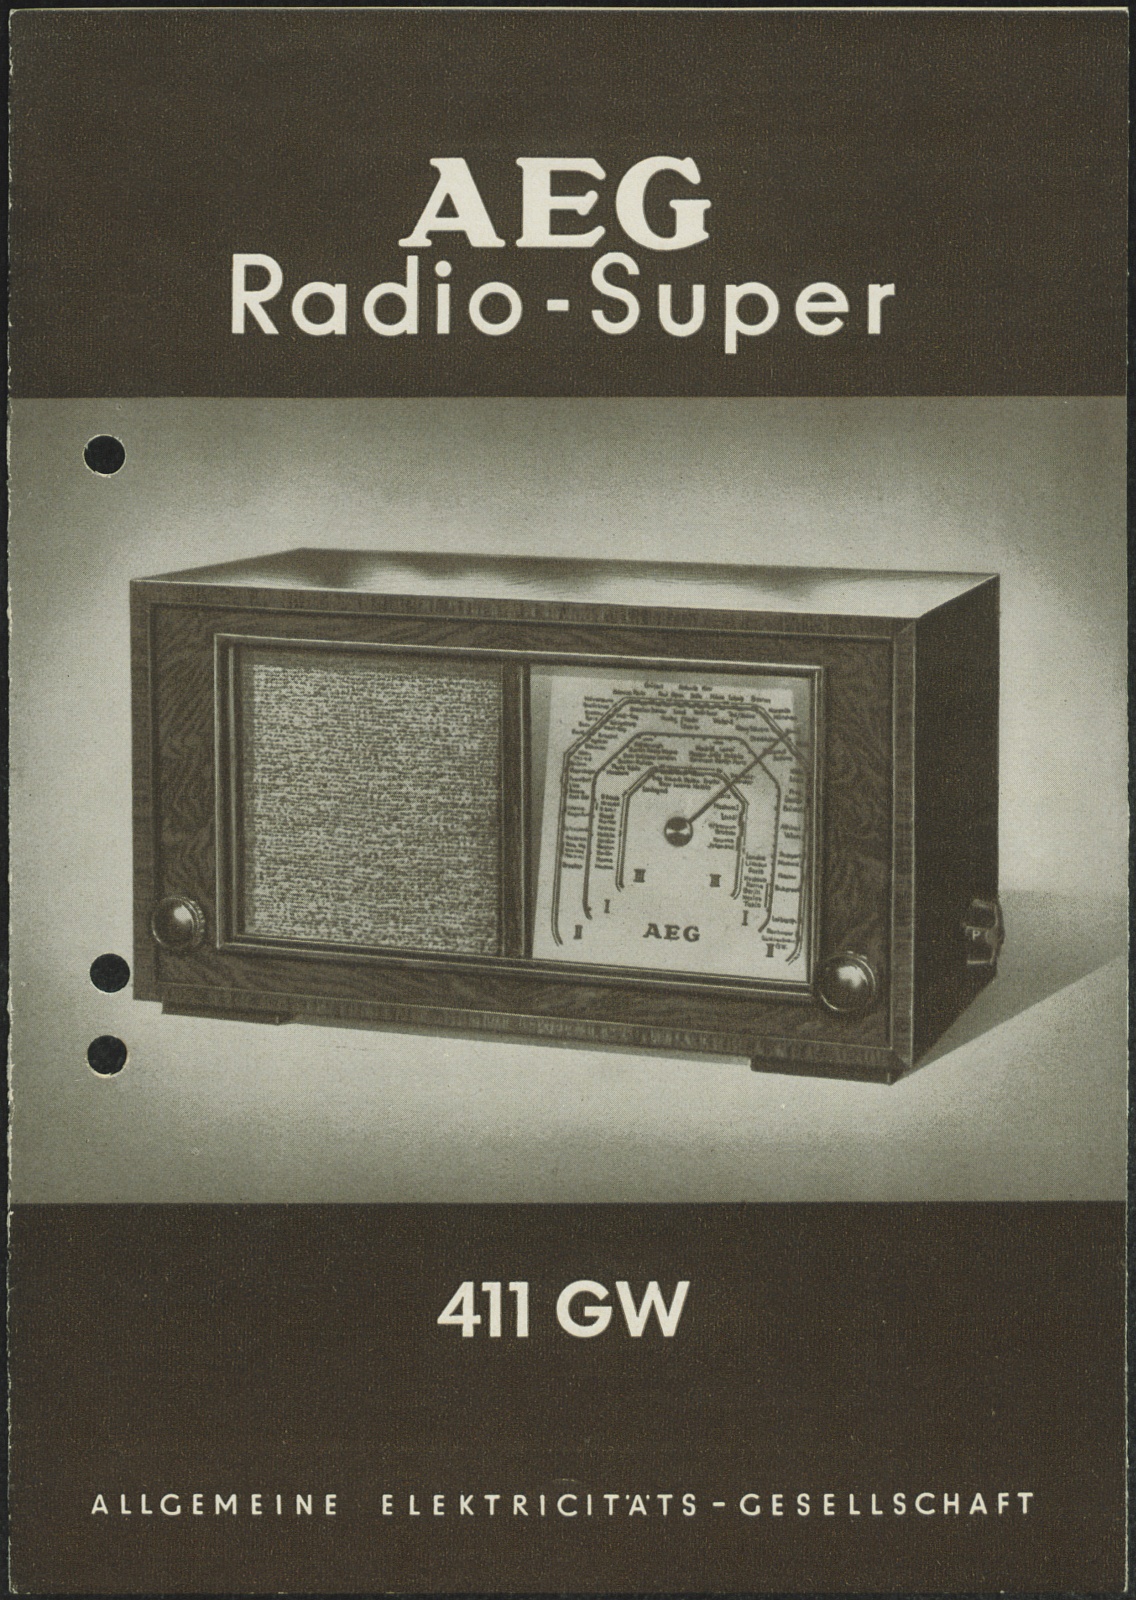 Bedienungsanleitung: AEG Radio Super 411 GW (Stiftung Deutsches Technikmuseum Berlin CC0)